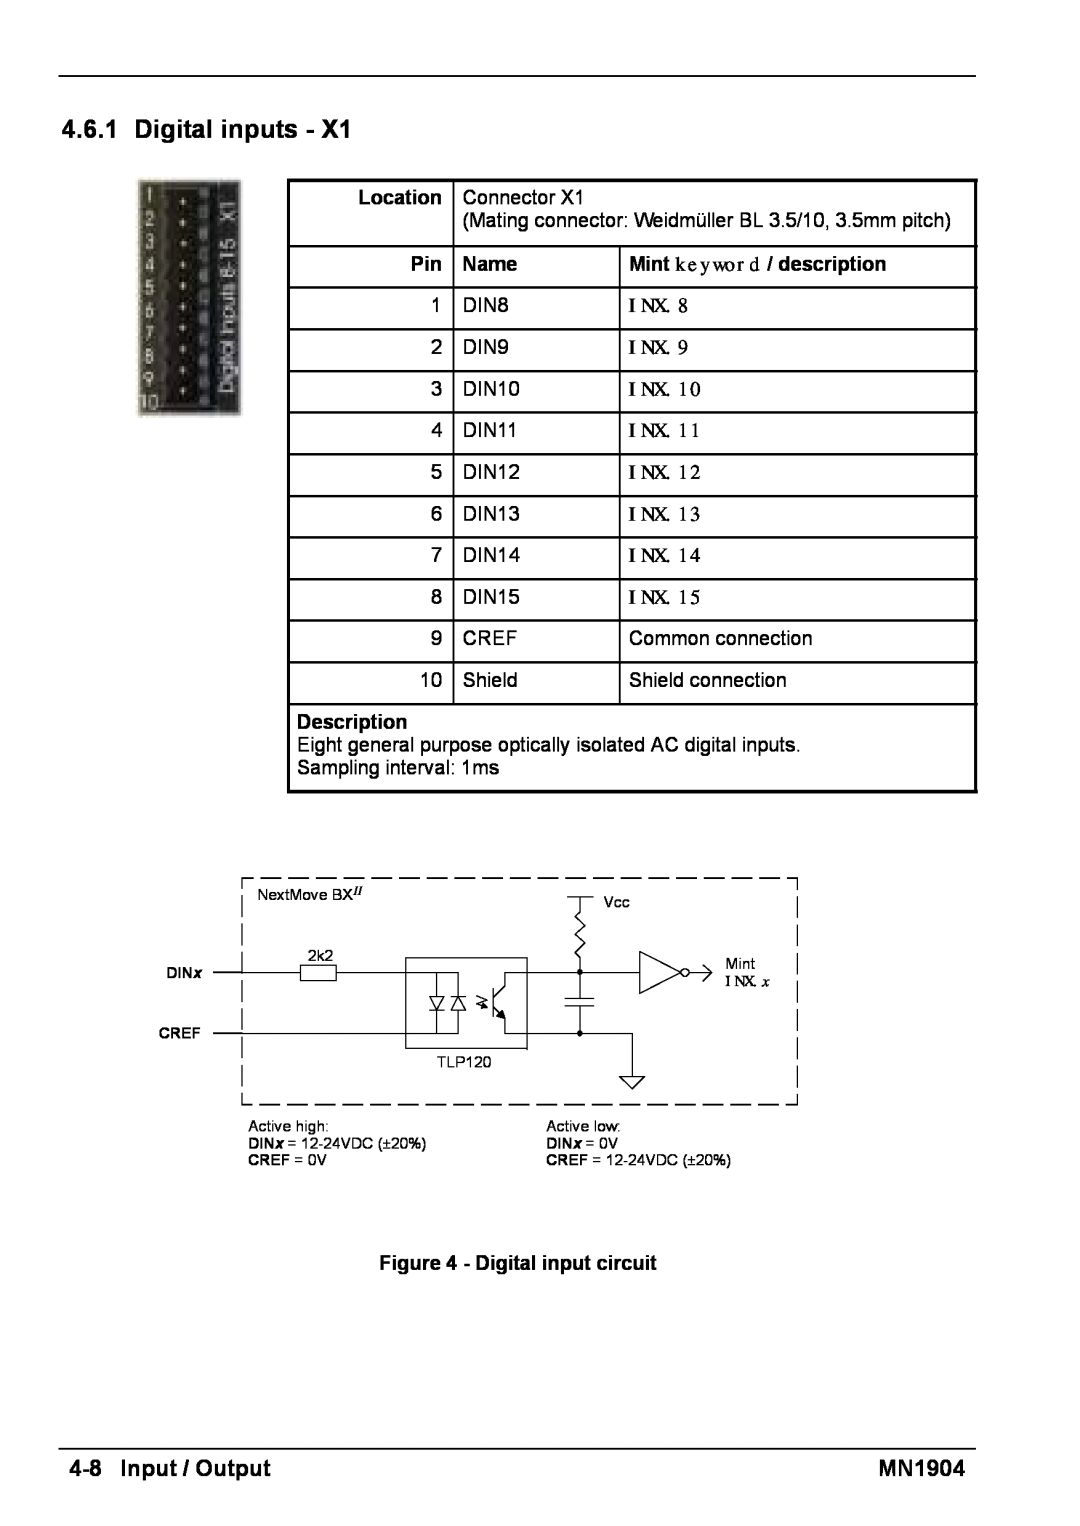 Baldor BXII installation manual Digital inputs, 4-8Input / Output, MN1904 